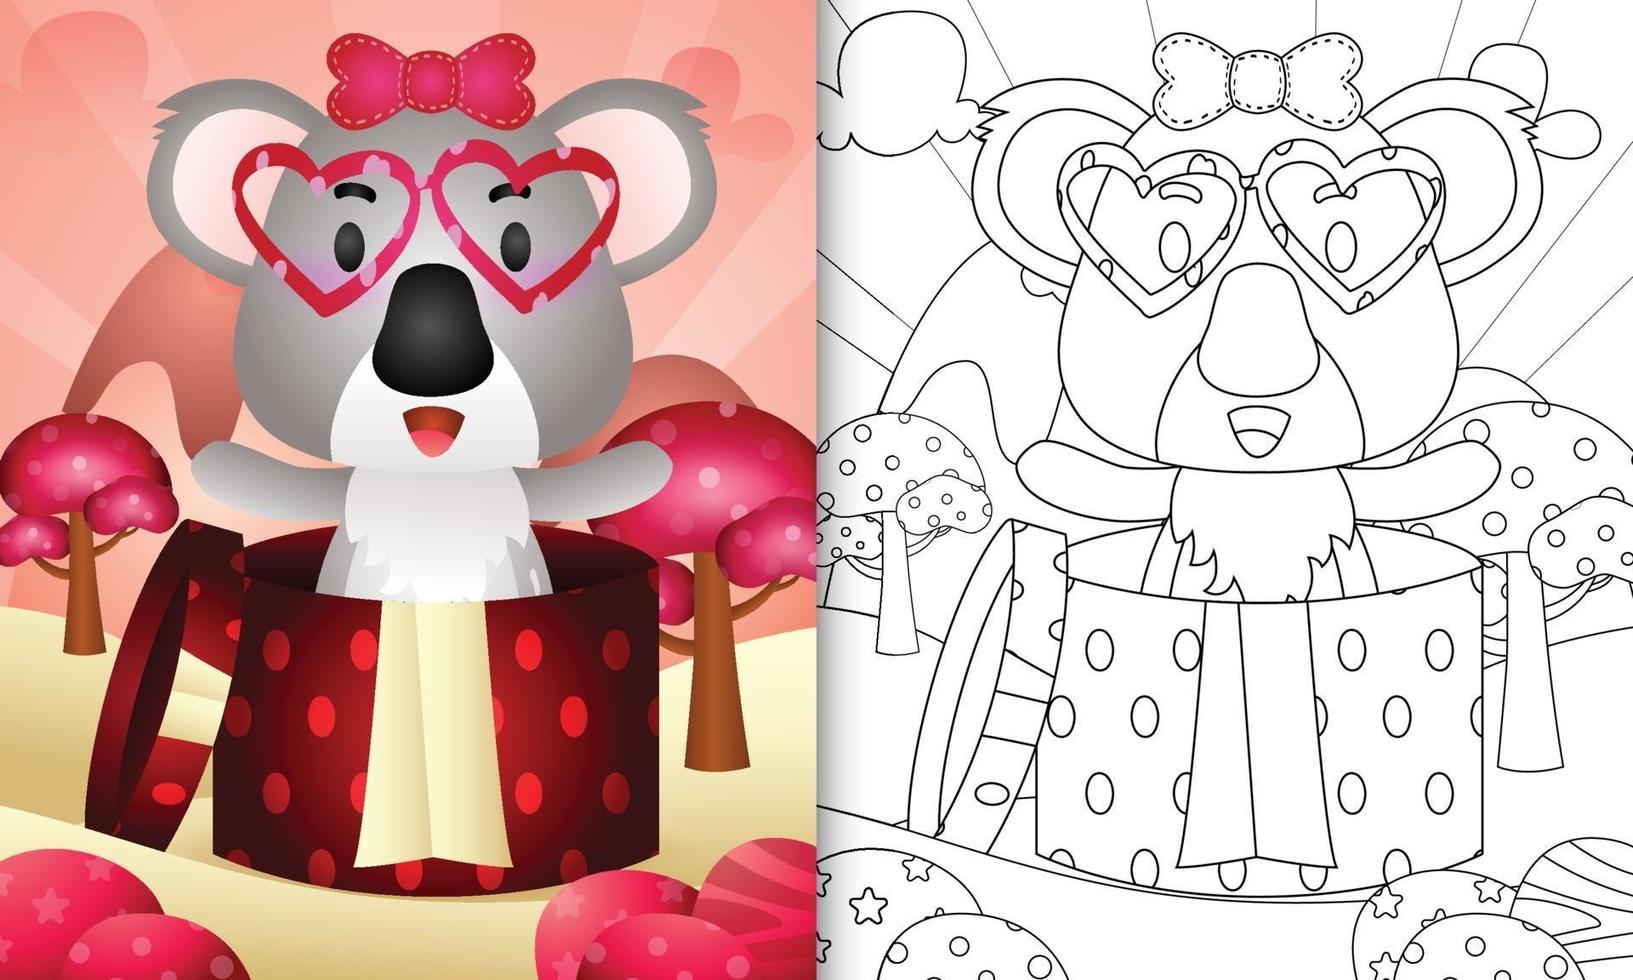 kleurboek voor kinderen met een schattige koala in de geschenkdoos voor Valentijnsdag vector